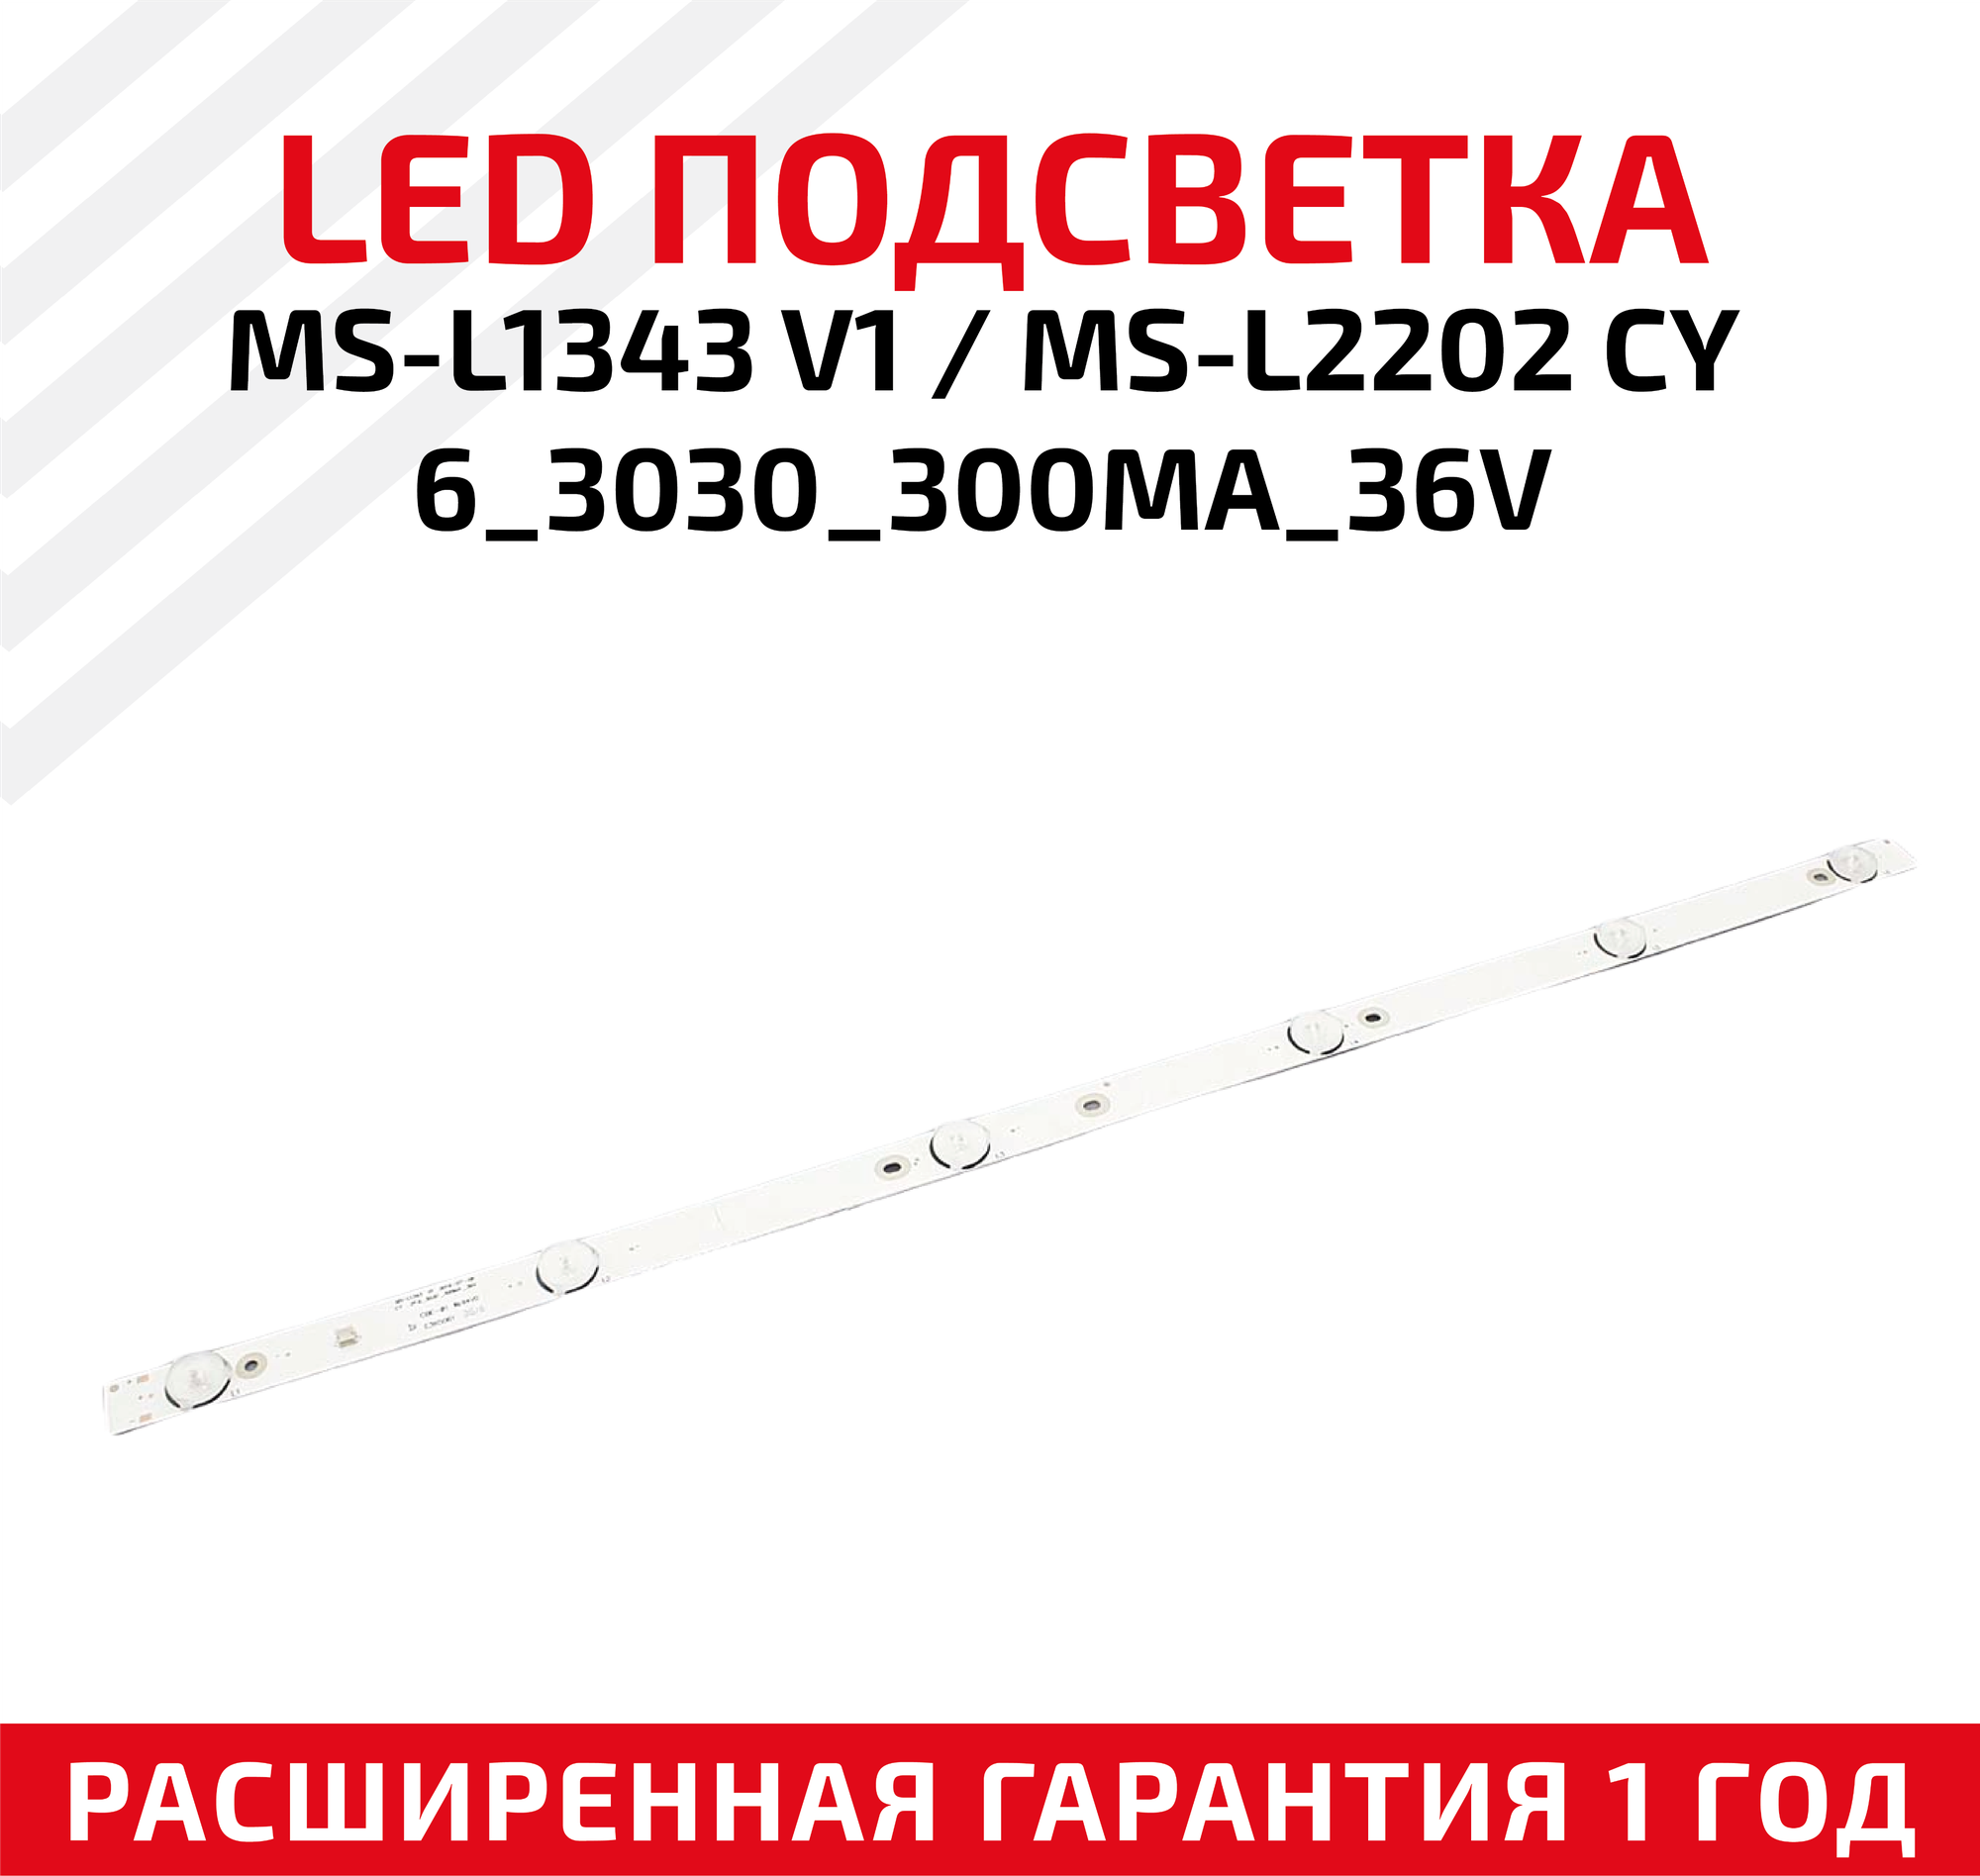 LED подсветка (светодиодная планка) для телевизора MS-L1343 V1 2016-07-06 CY 2*6_3030_300MA_36V